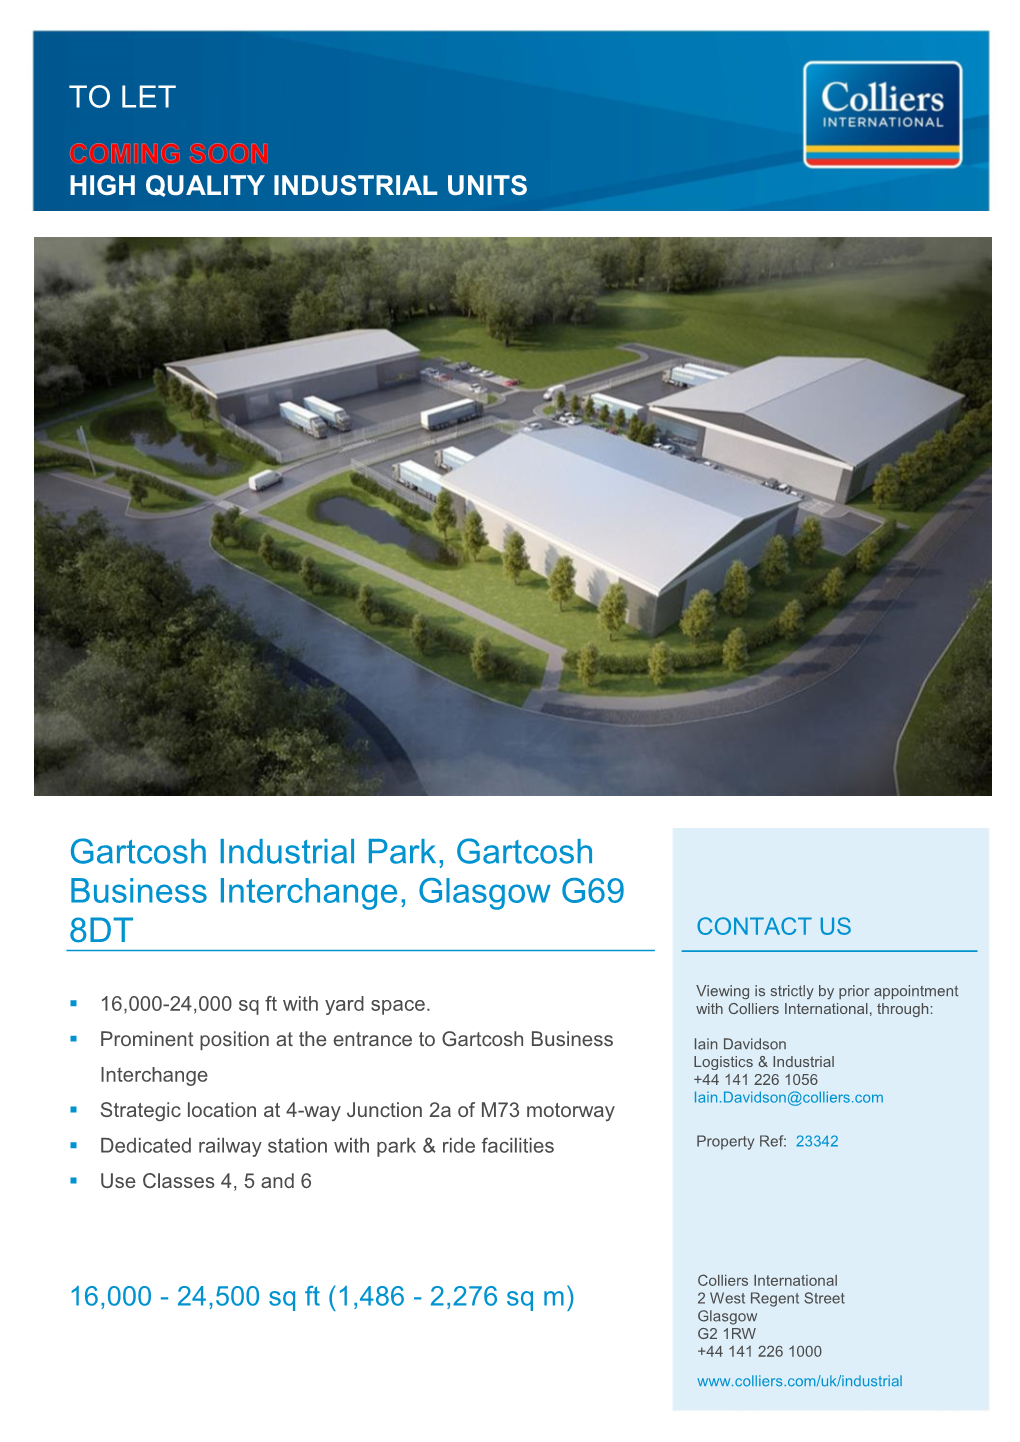 Gartcosh Industrial Park, Gartcosh Business Interchange, Glasgow G69 8DT CONTACT US